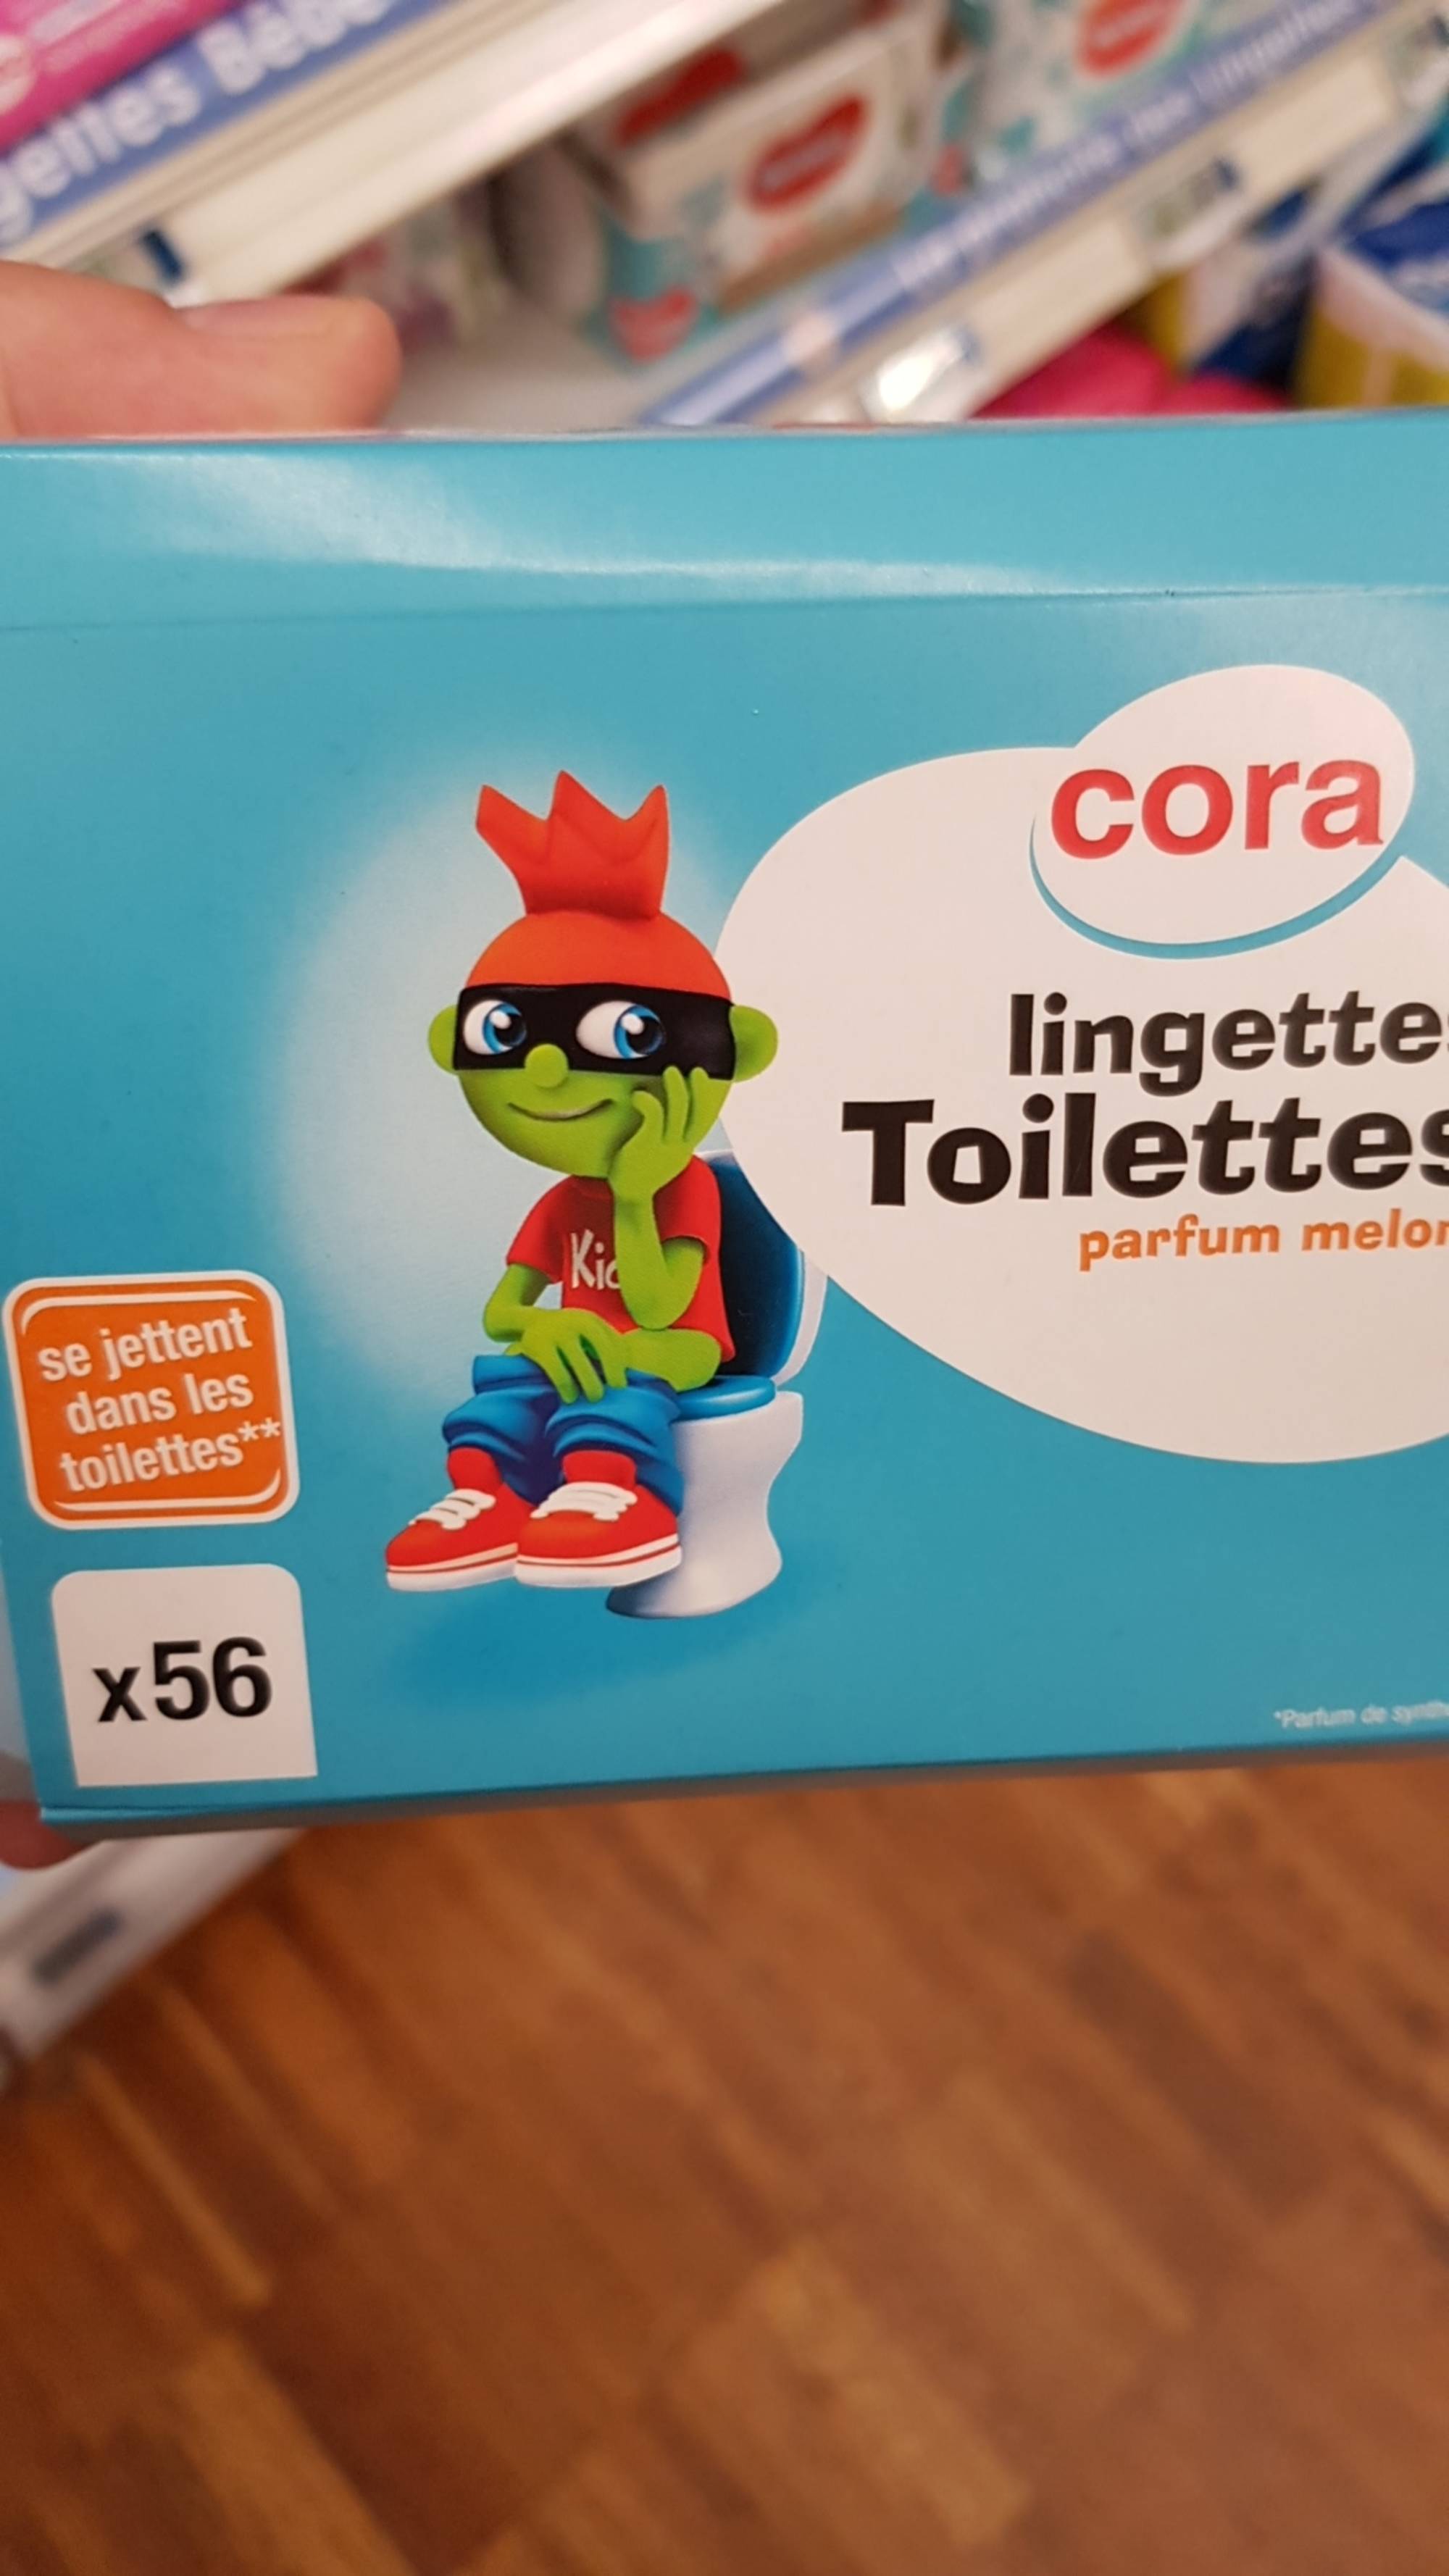 CORA - Lingette toilettes parfum melon